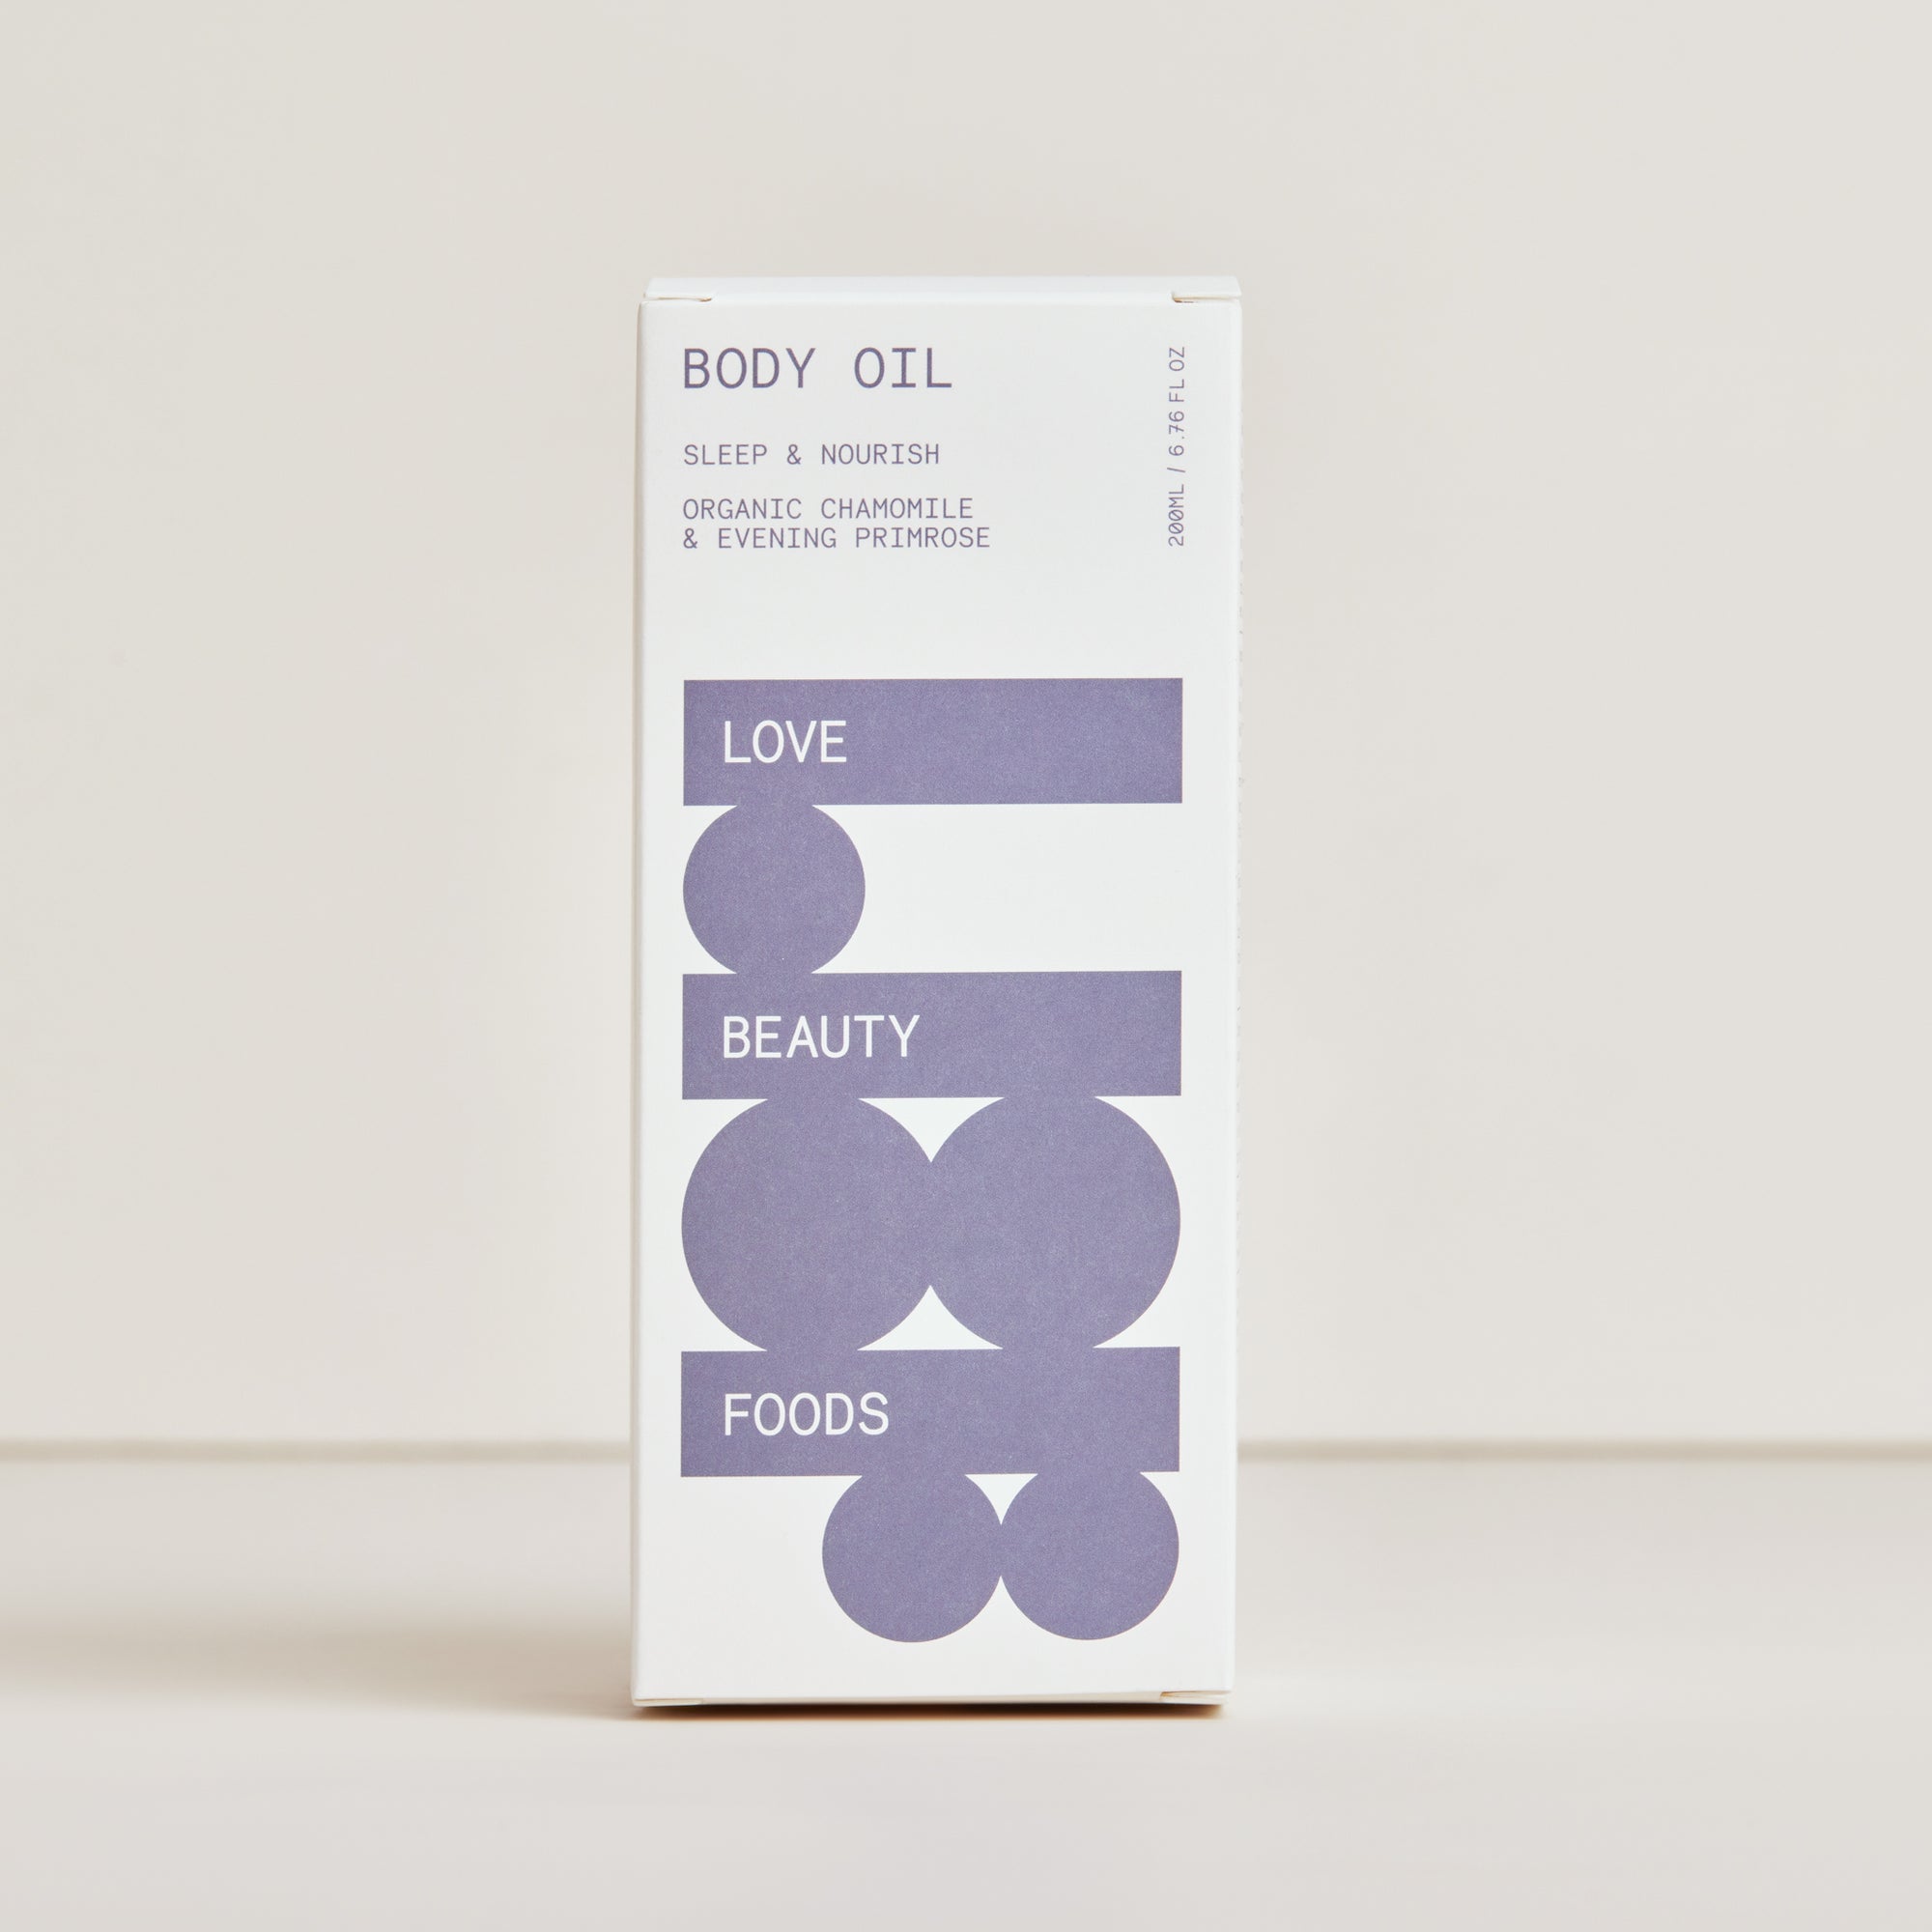 Body Oil - Sleep & Nourish